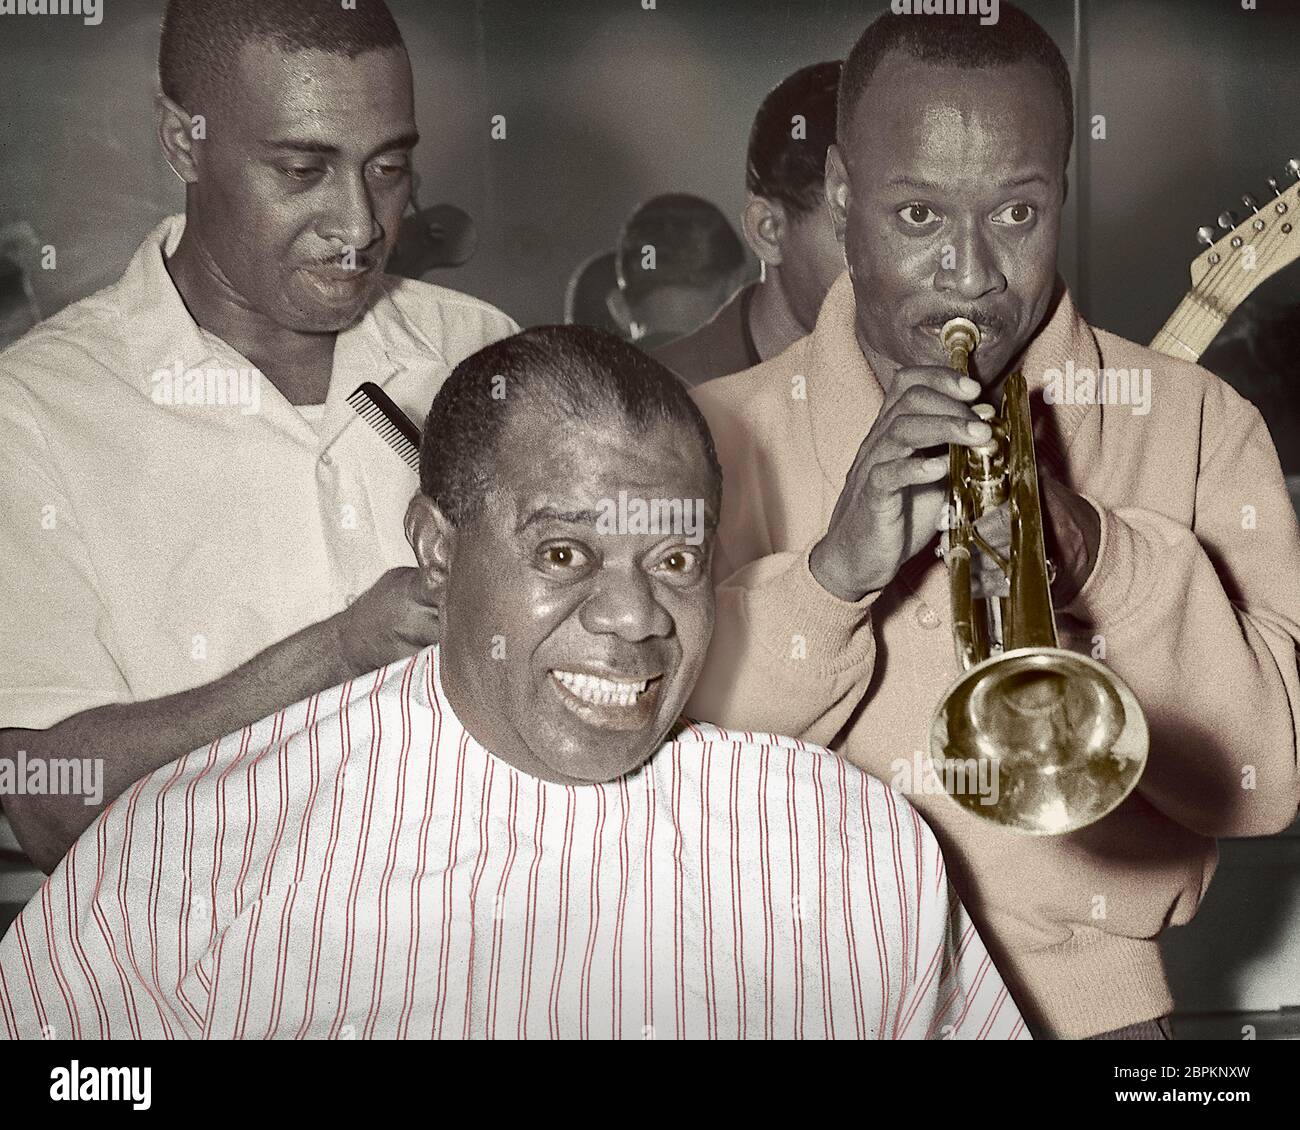 Louie 'Fatchmo' Armstrong si serenò mentre si trovava in un barbiere a Chicago, Illinois. 1961. Immagine colorata da negativo in bianco e nero 4x5 pollici. Foto Stock